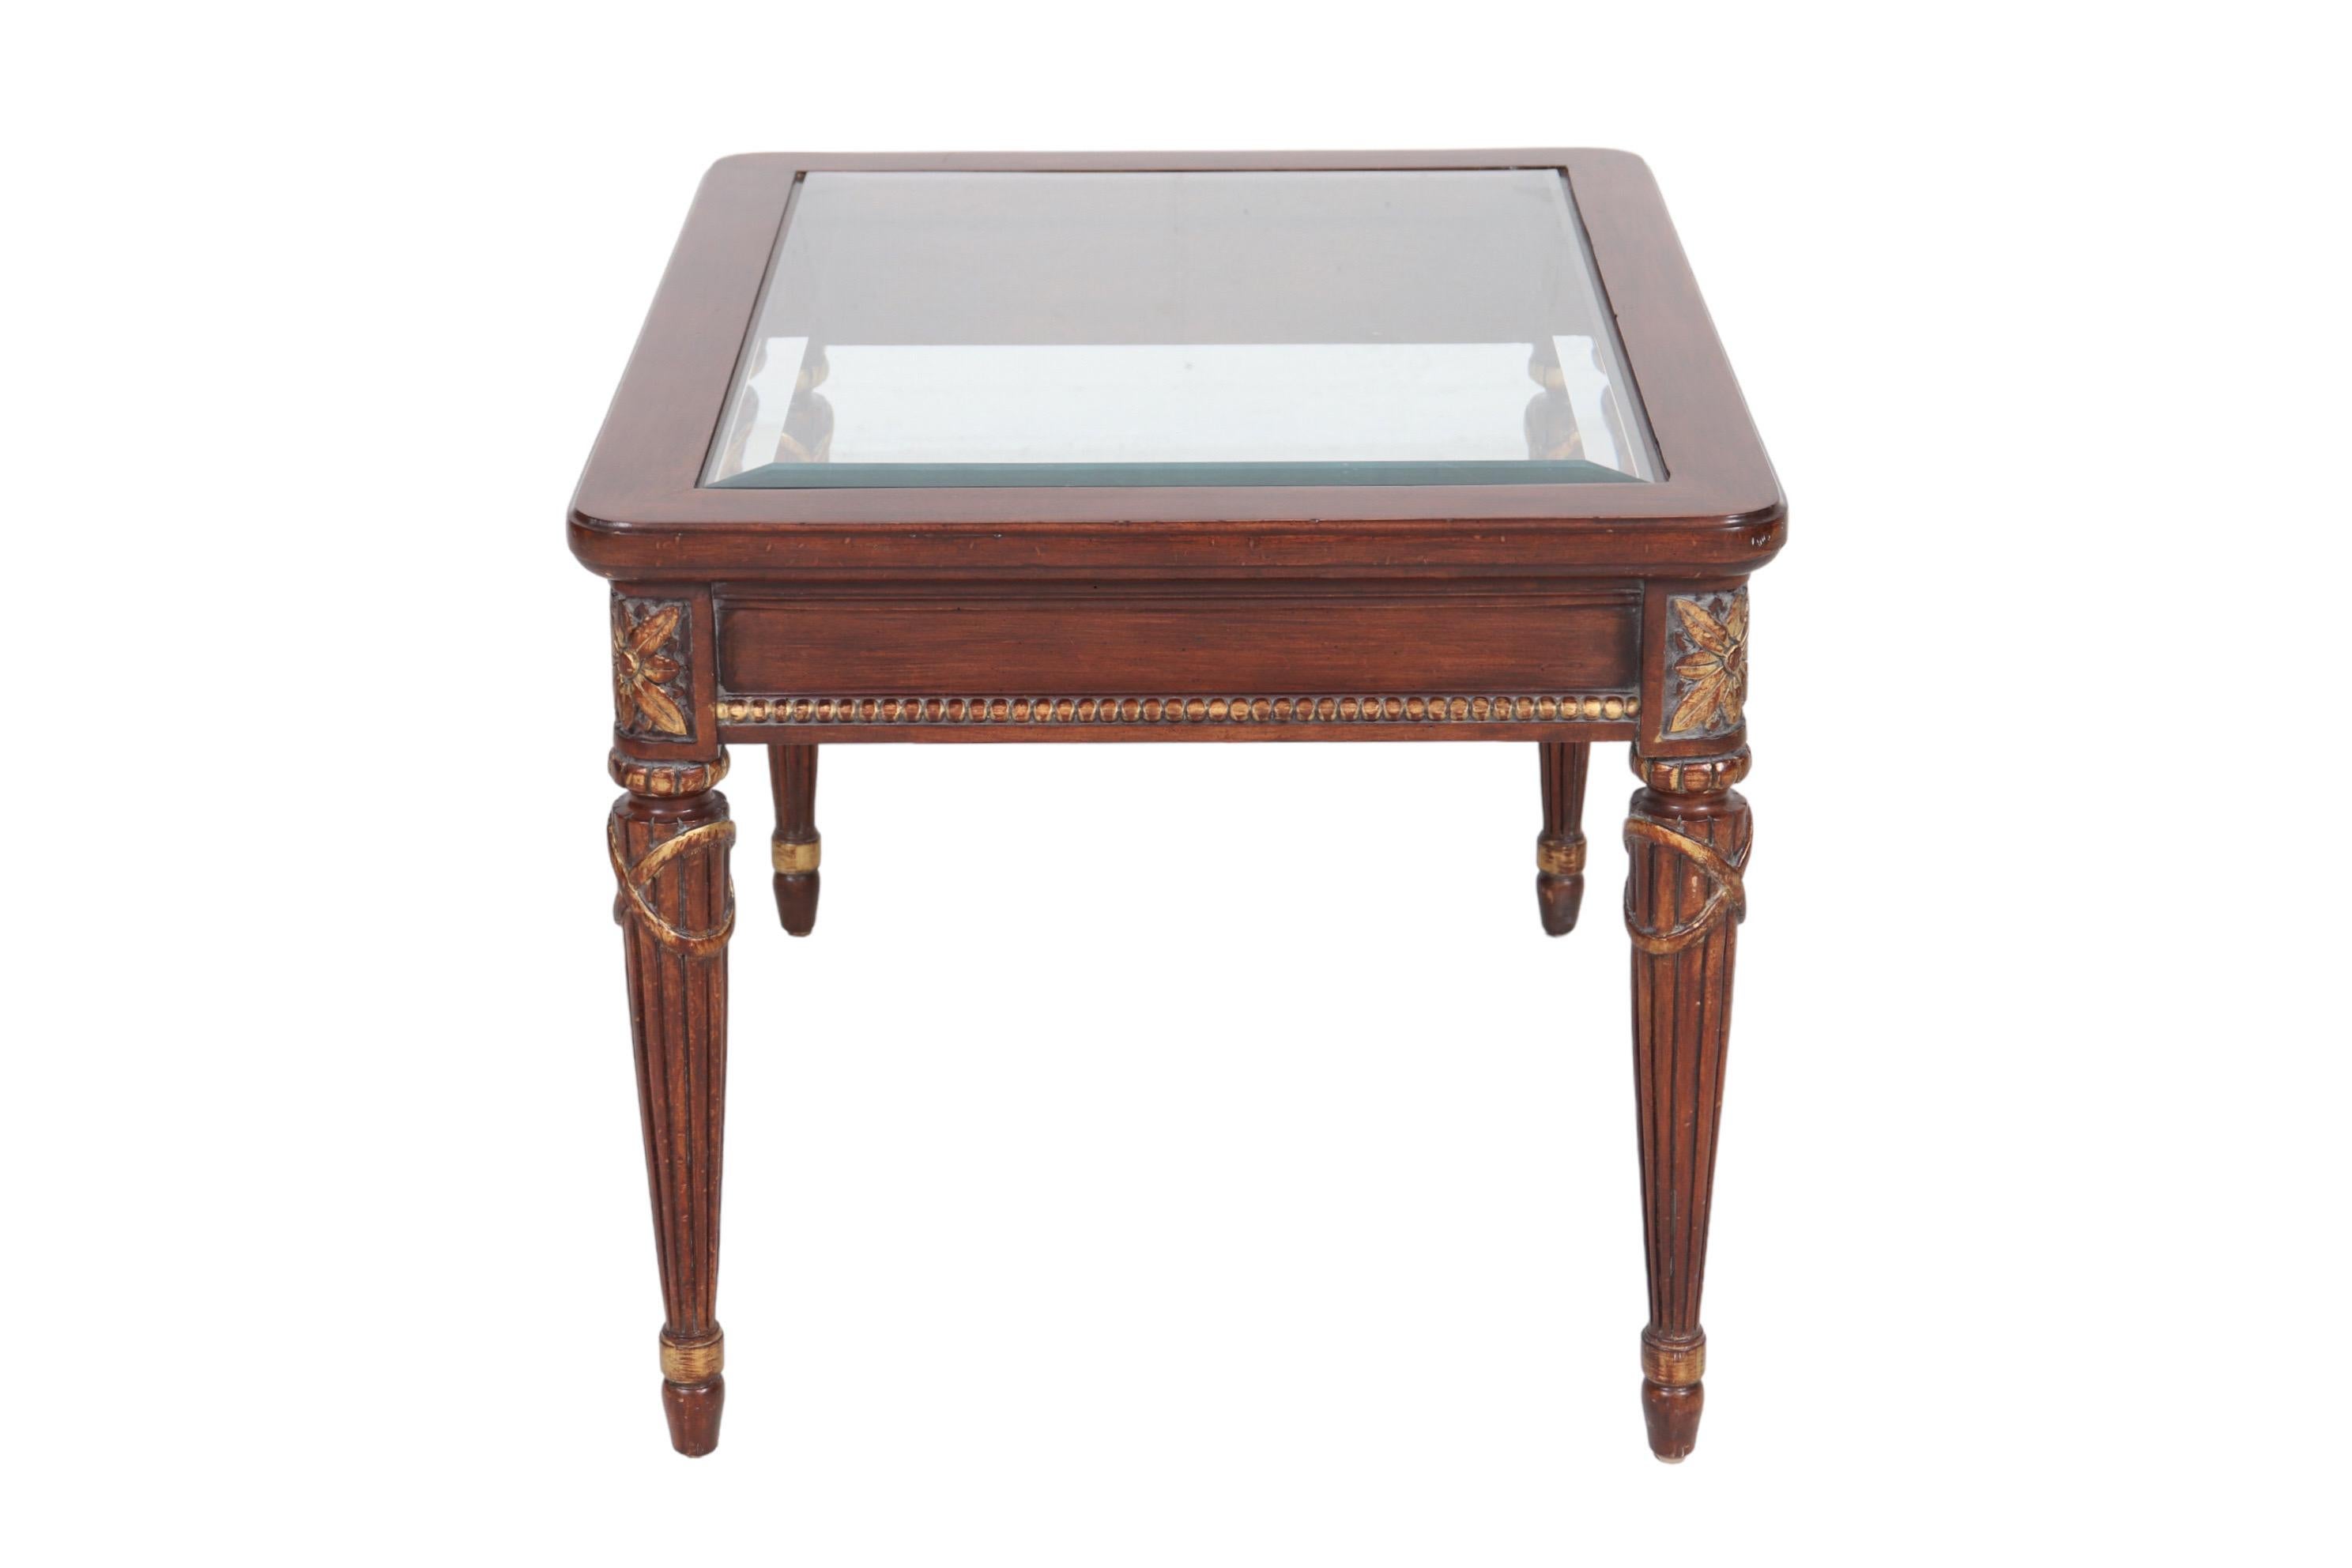 Table d'appoint de style Louis XVI avec un plateau en verre biseauté. La jupe de la table est ornée d'une bordure de perles sculptées. Des rosettes sculptées surmontent des pieds ronds et cannelés qui s'affinent et se terminent par des pieds en